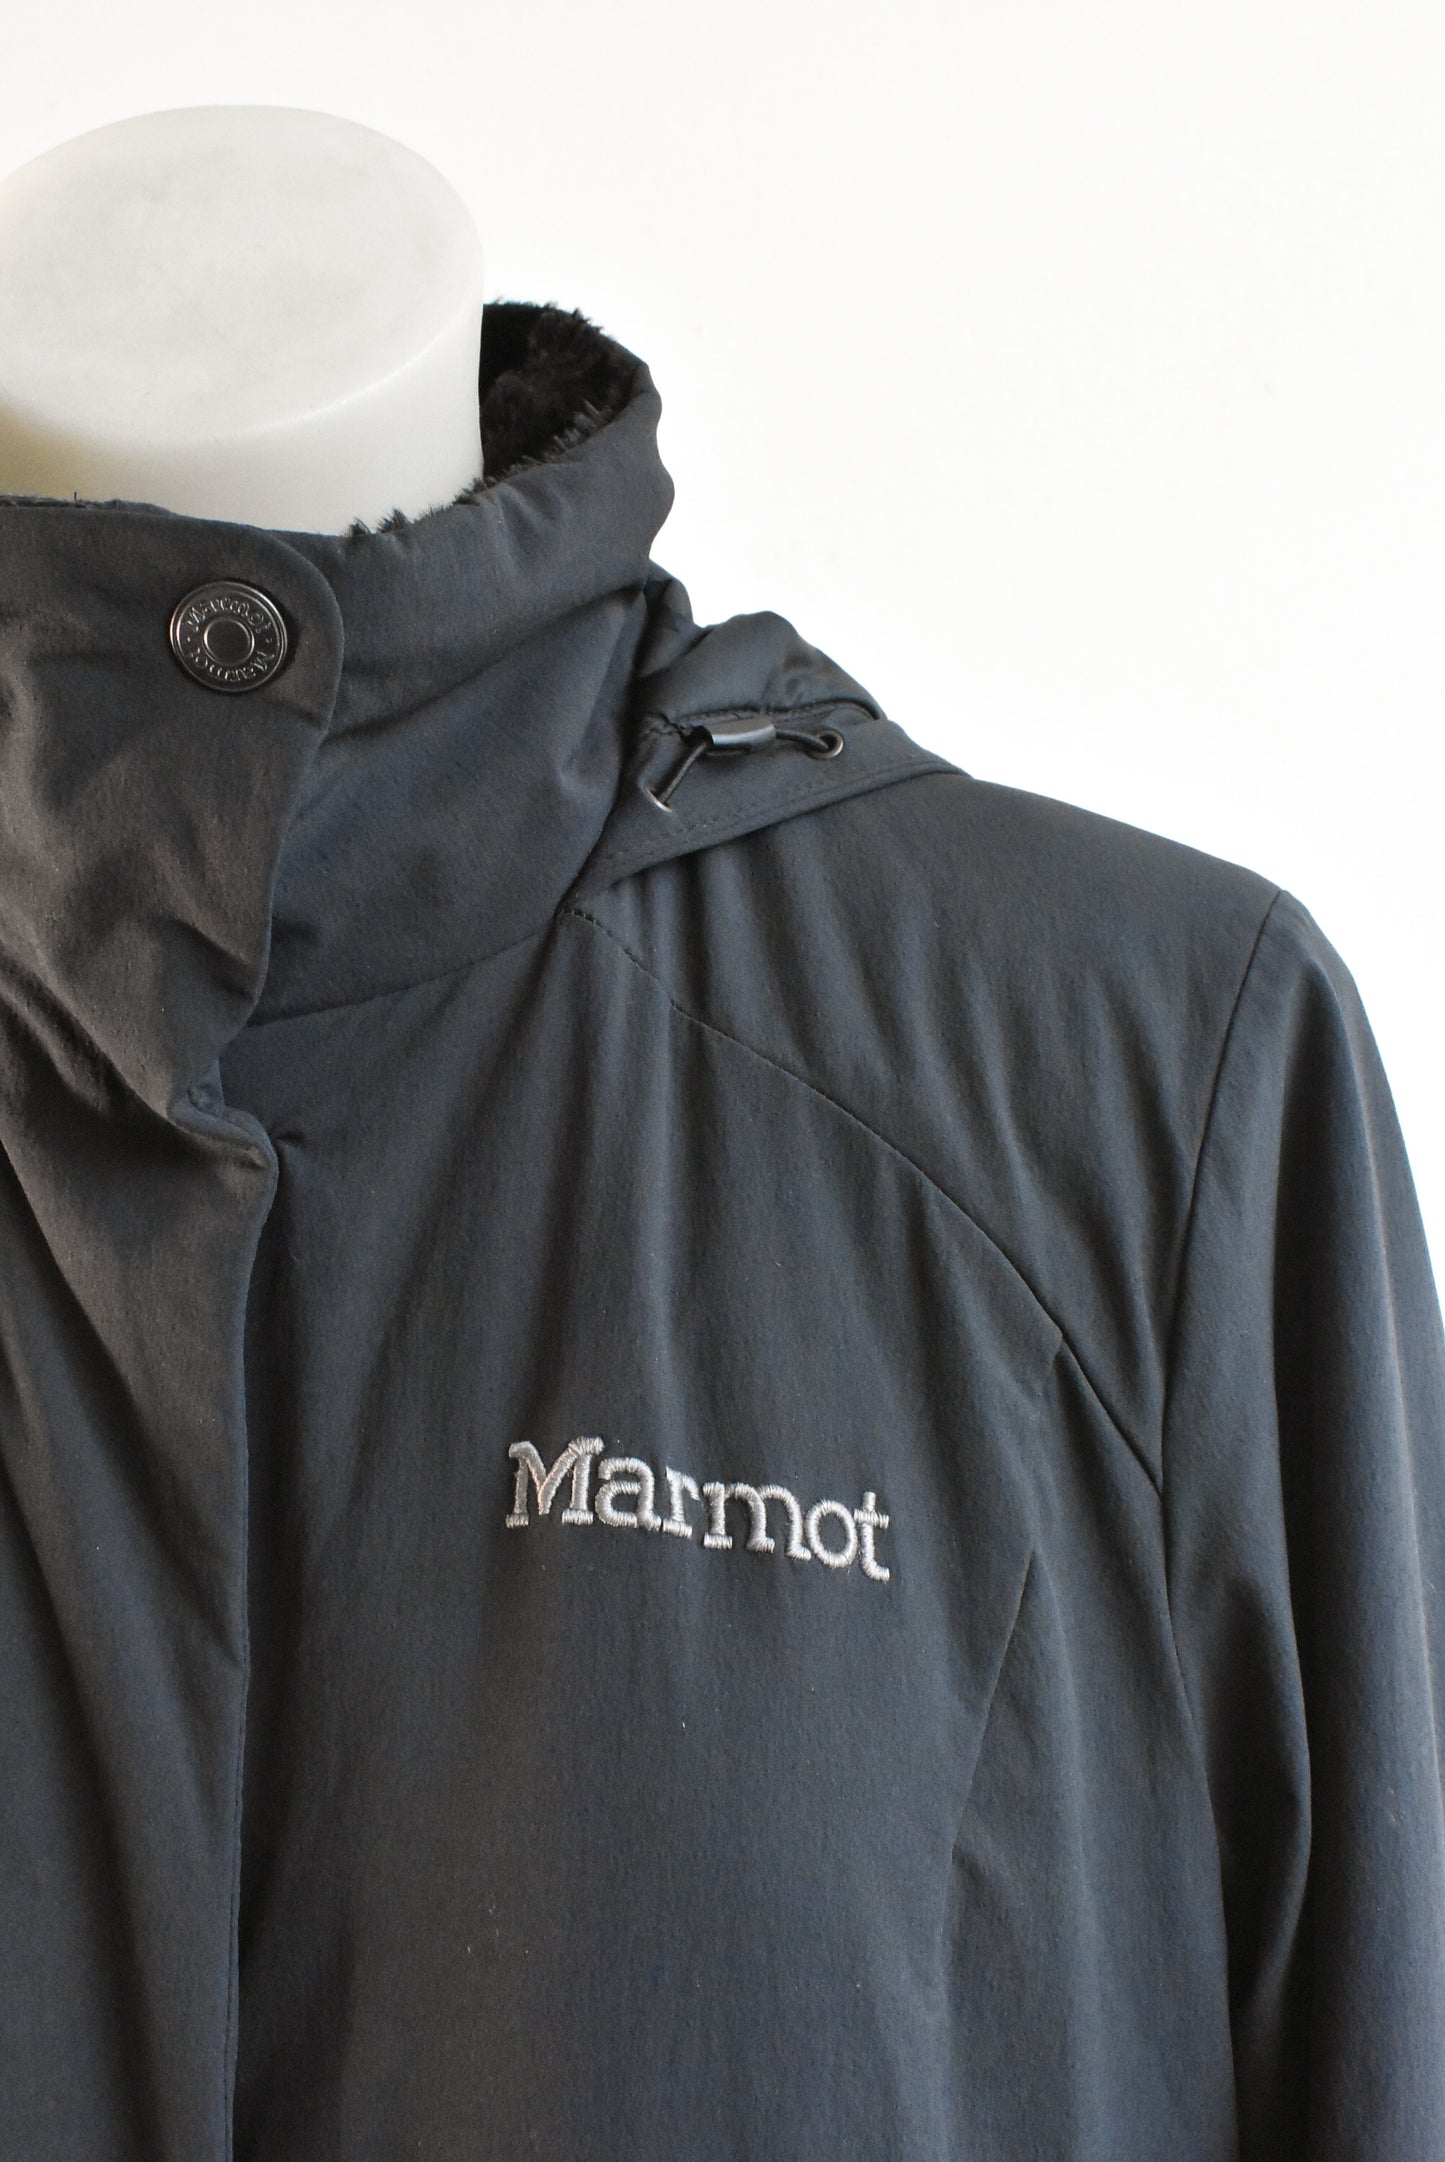 Marmot hooded jacket, size XL